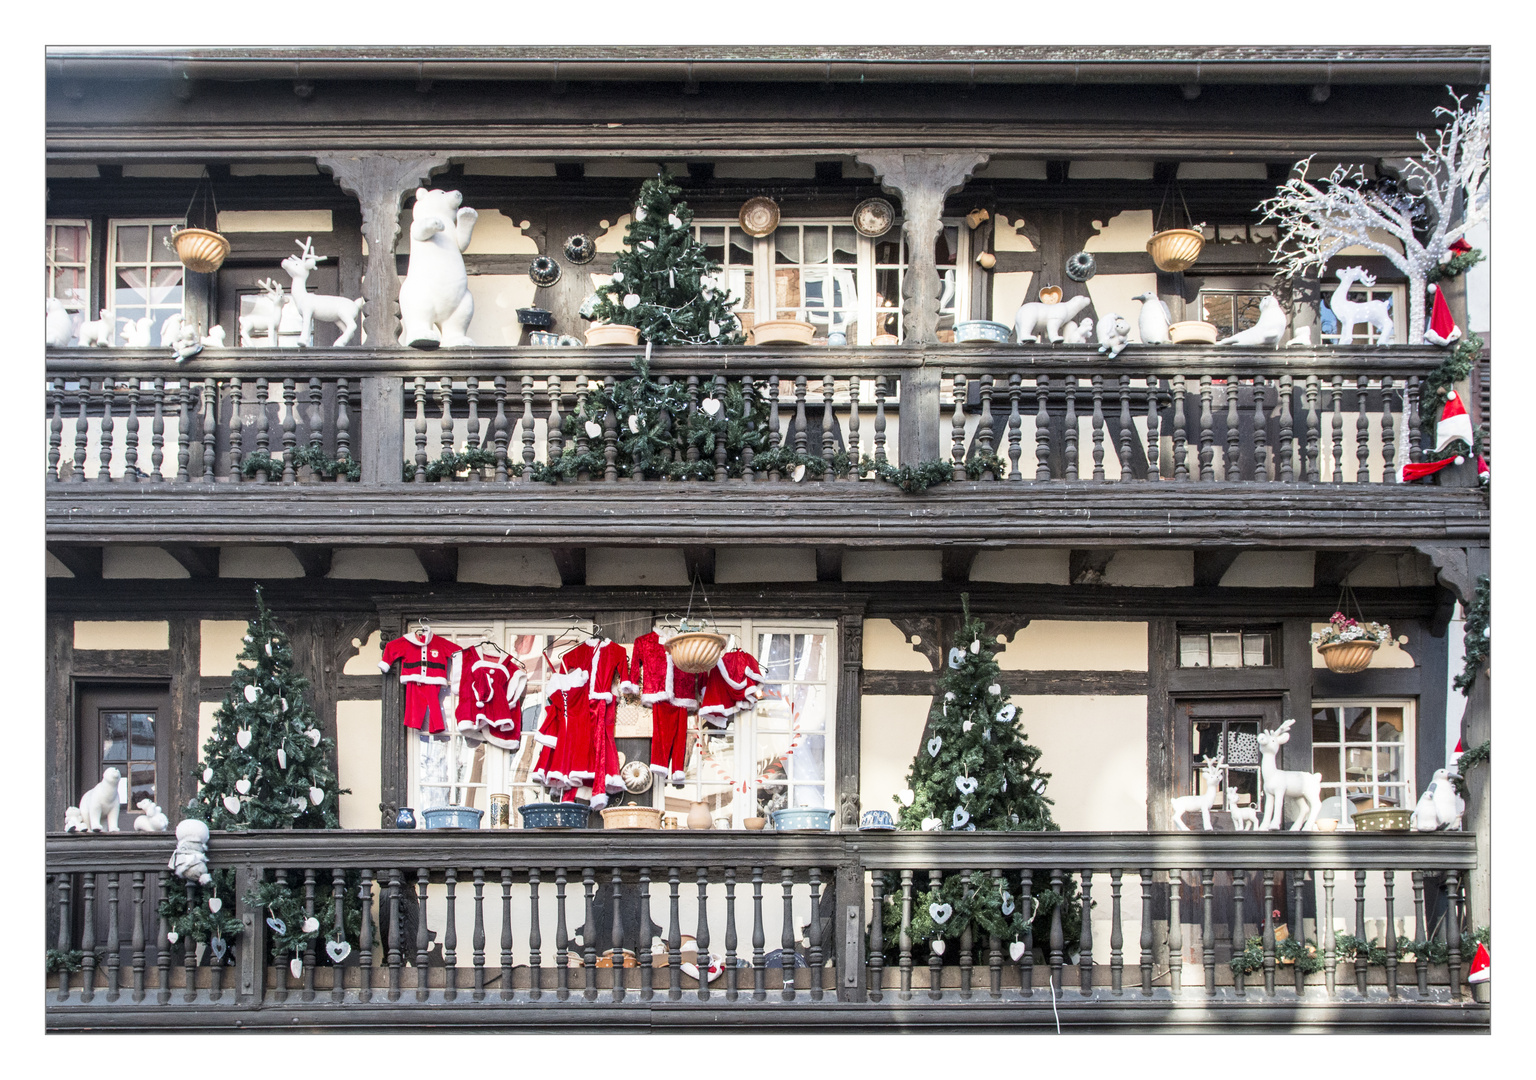 3. Weihnachtsfeiertag in Strasbourg